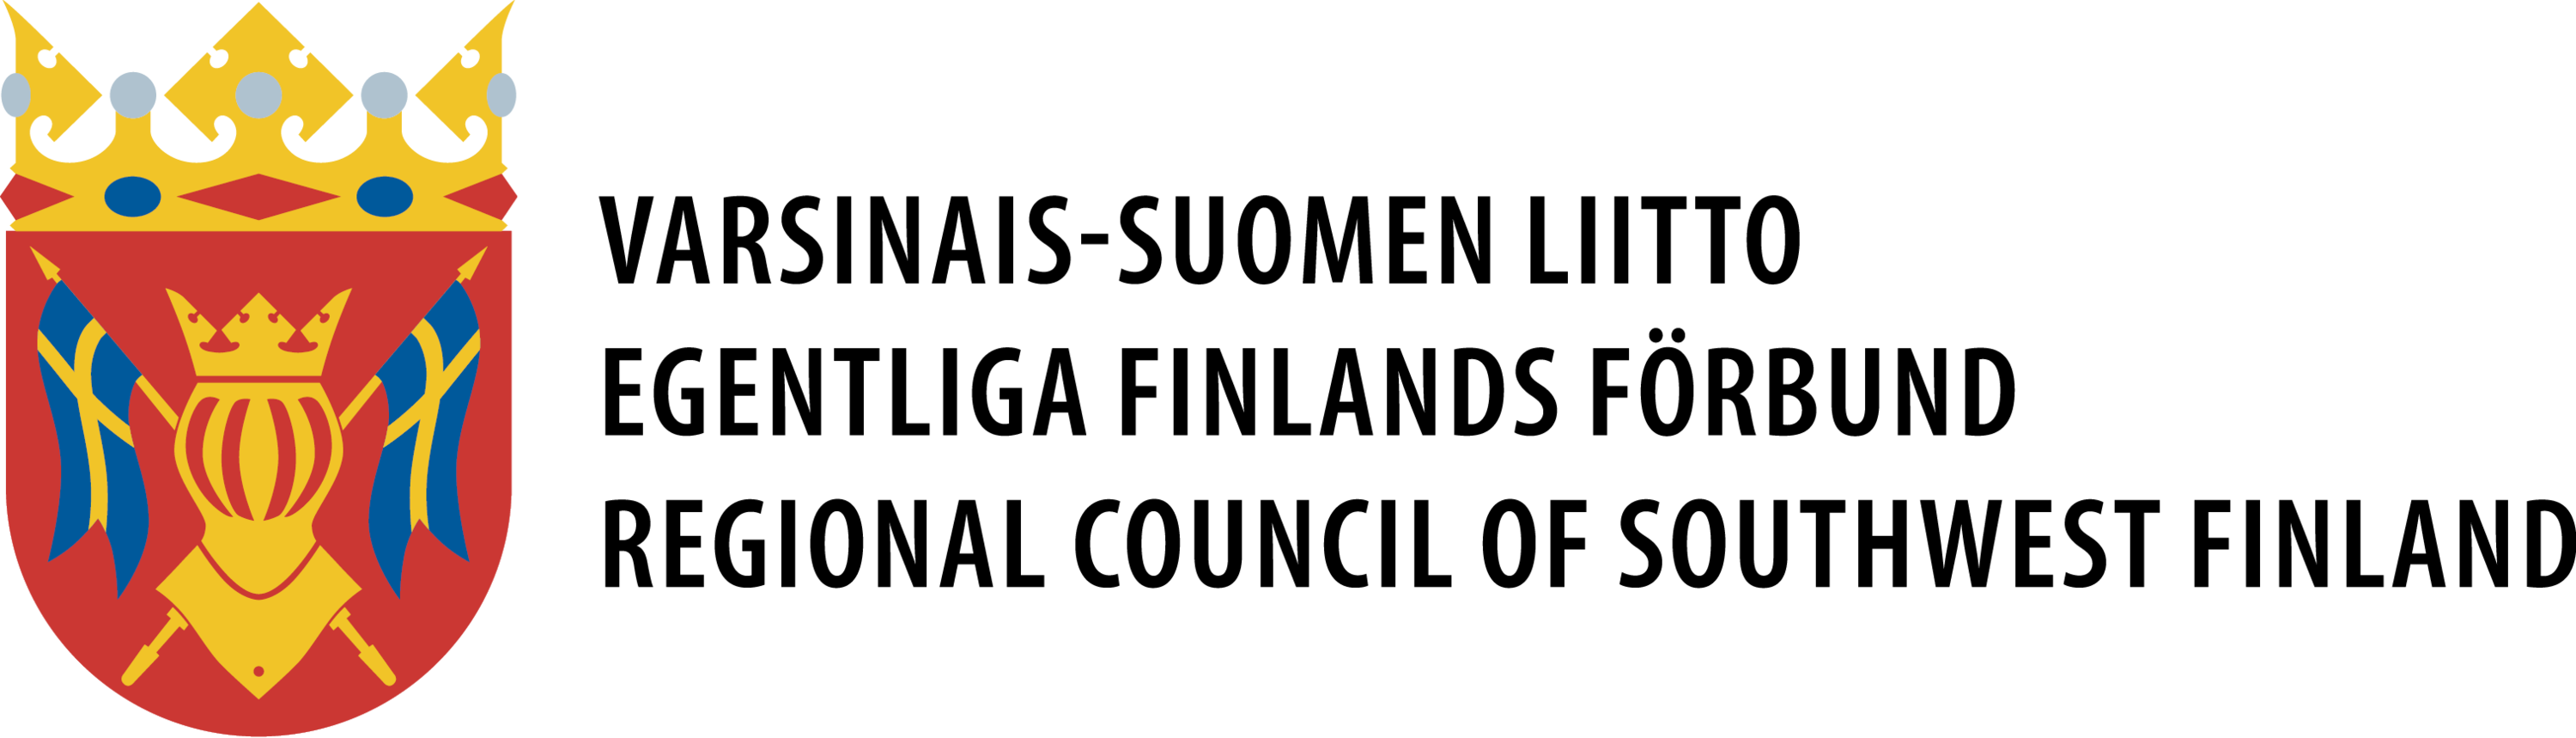 Varsinais-Suomen liitto, logo